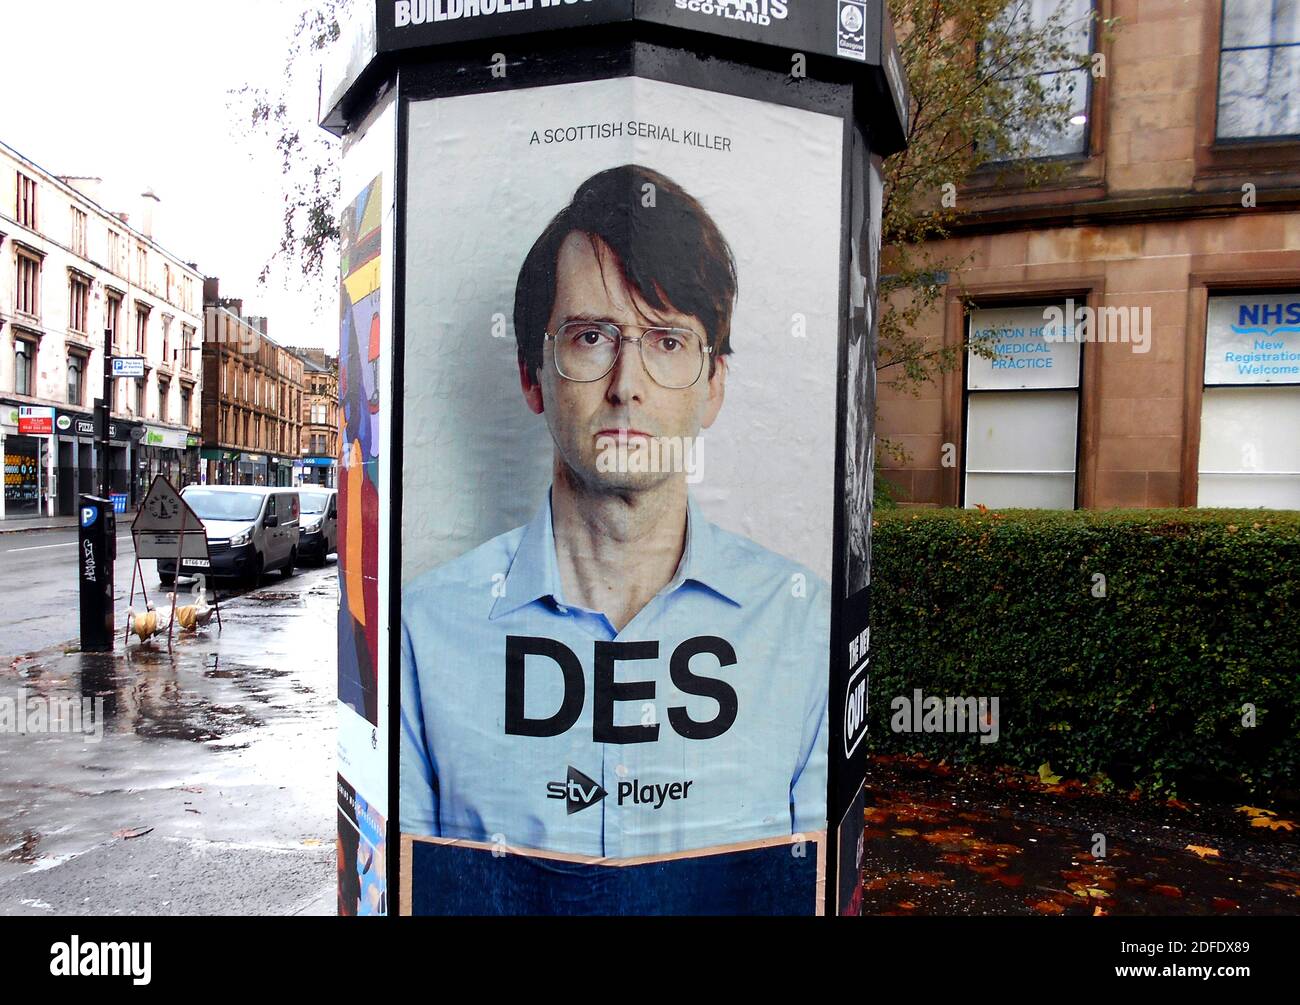 Un cuadro del actor escocés, David Tennant, adorna un pilar publicitario en Glasgow, para promover un programa de televisión en el que está apareciendo. ALAN WYLIE/ALAMY © Foto de stock